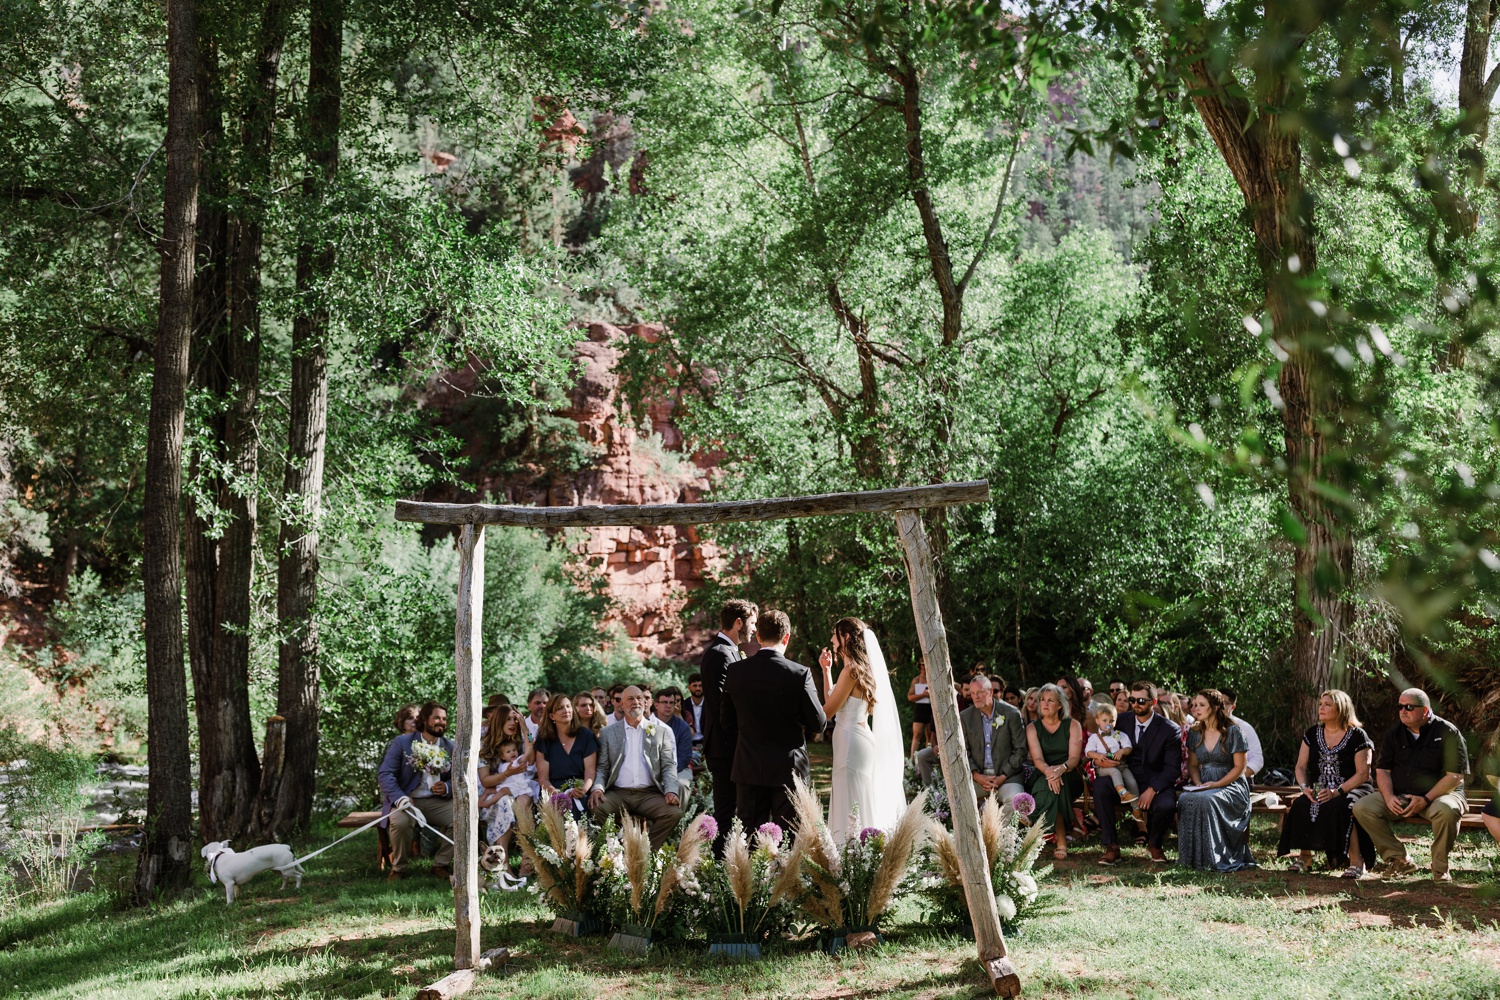 Outdoor wedding ceremony at Dallenbach Ranch